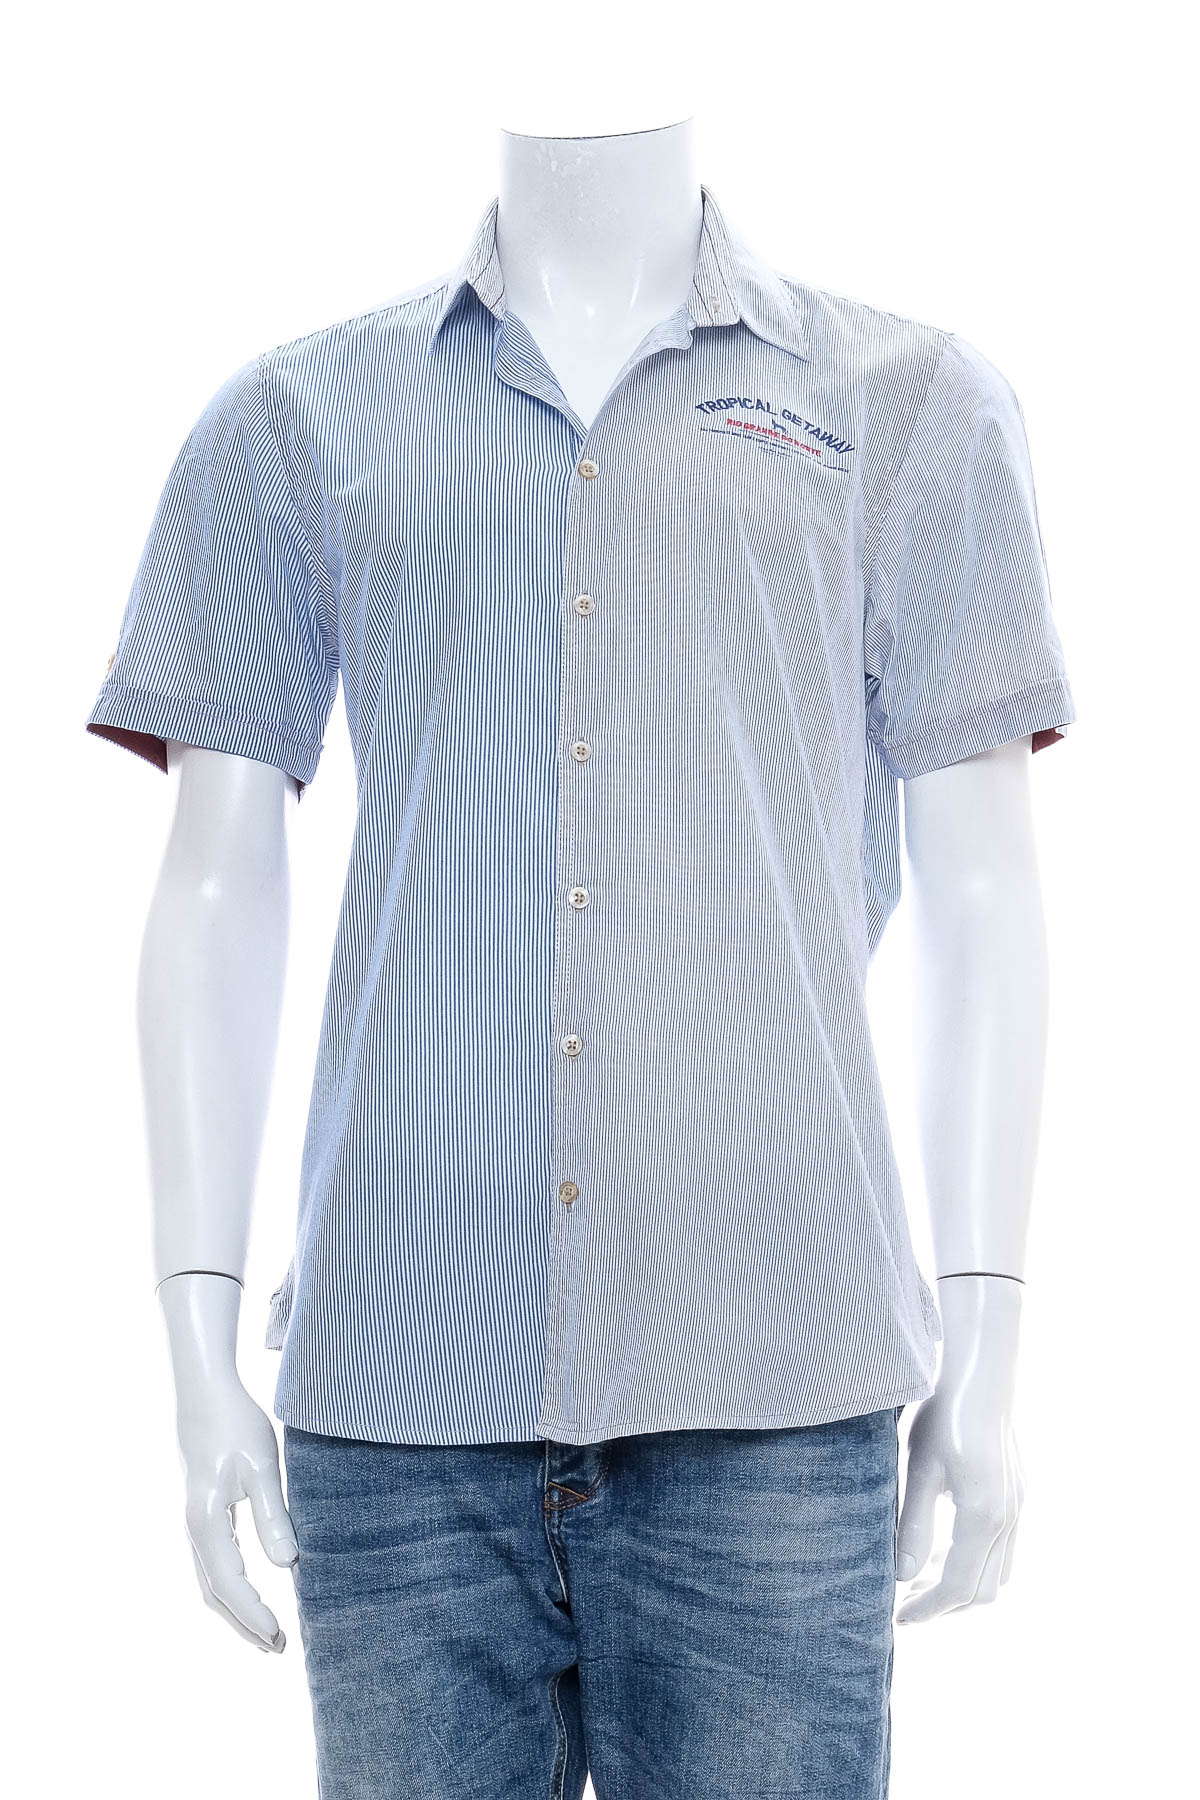 Ανδρικό πουκάμισο - Emilio Adani - 0